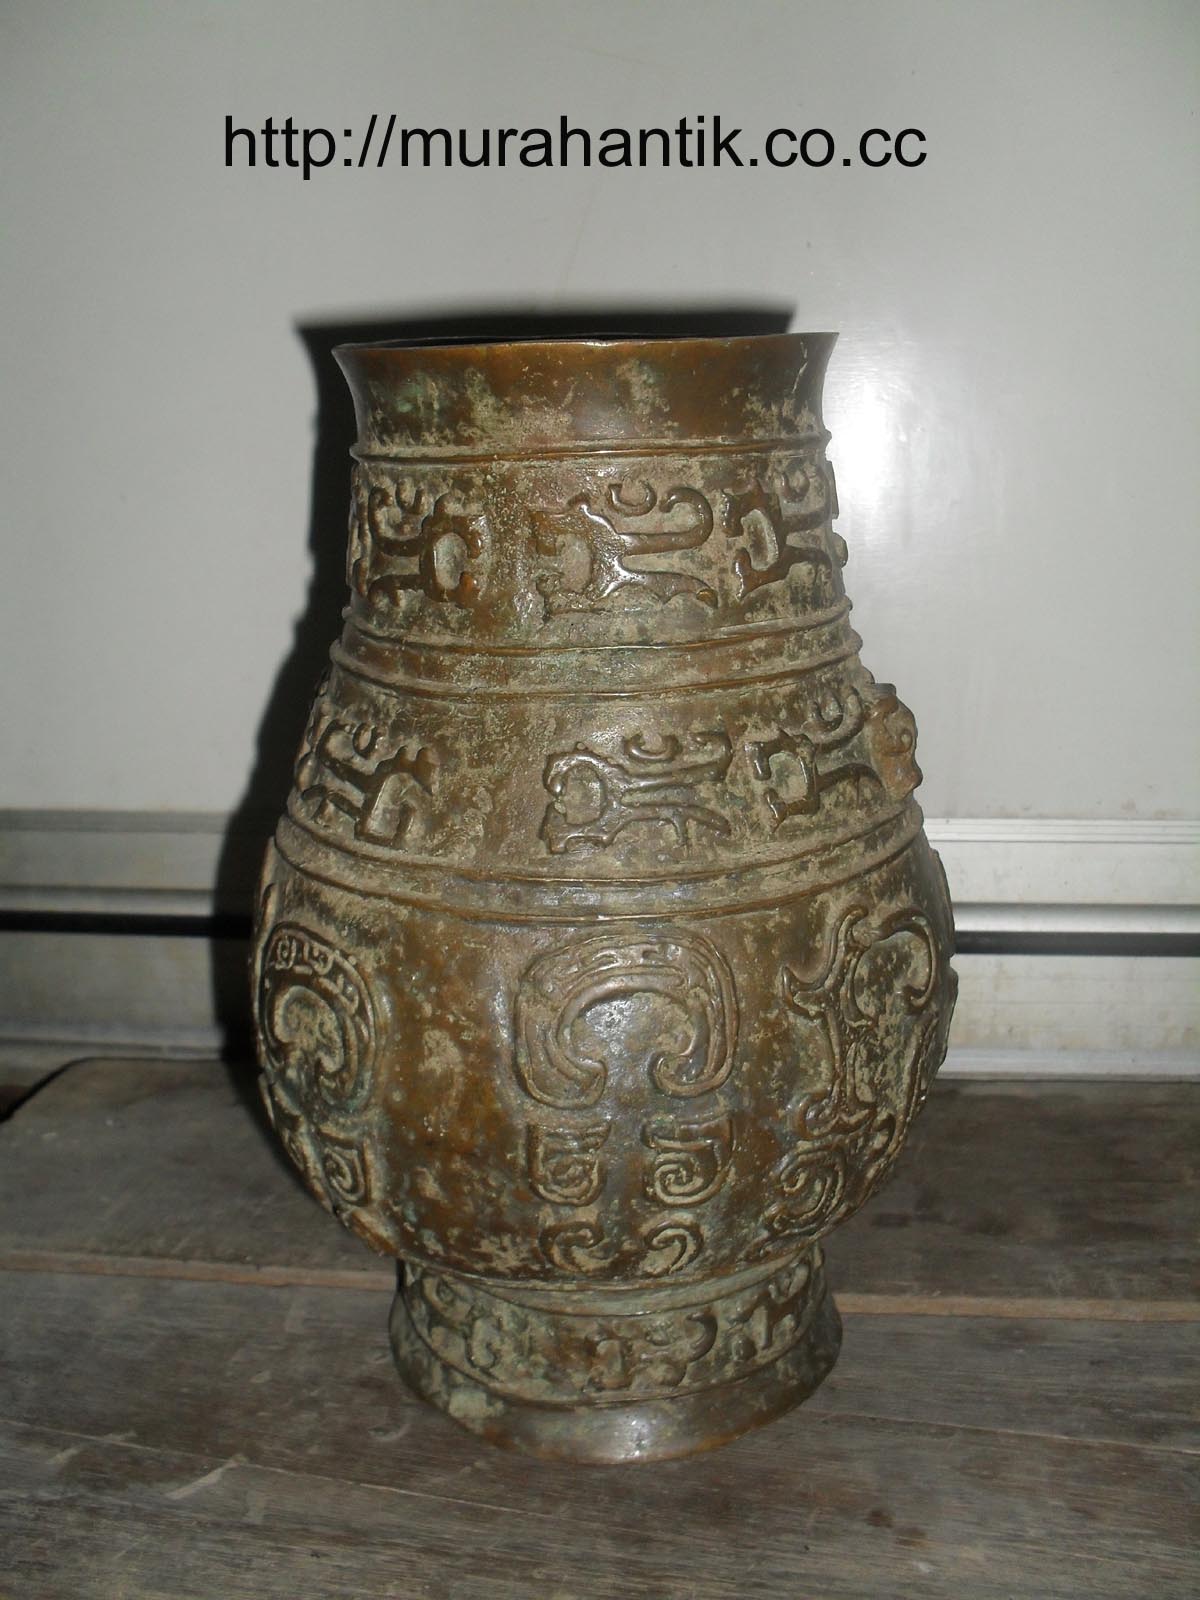 tembikar dari kuningan sebagai tanda kesejahteraan